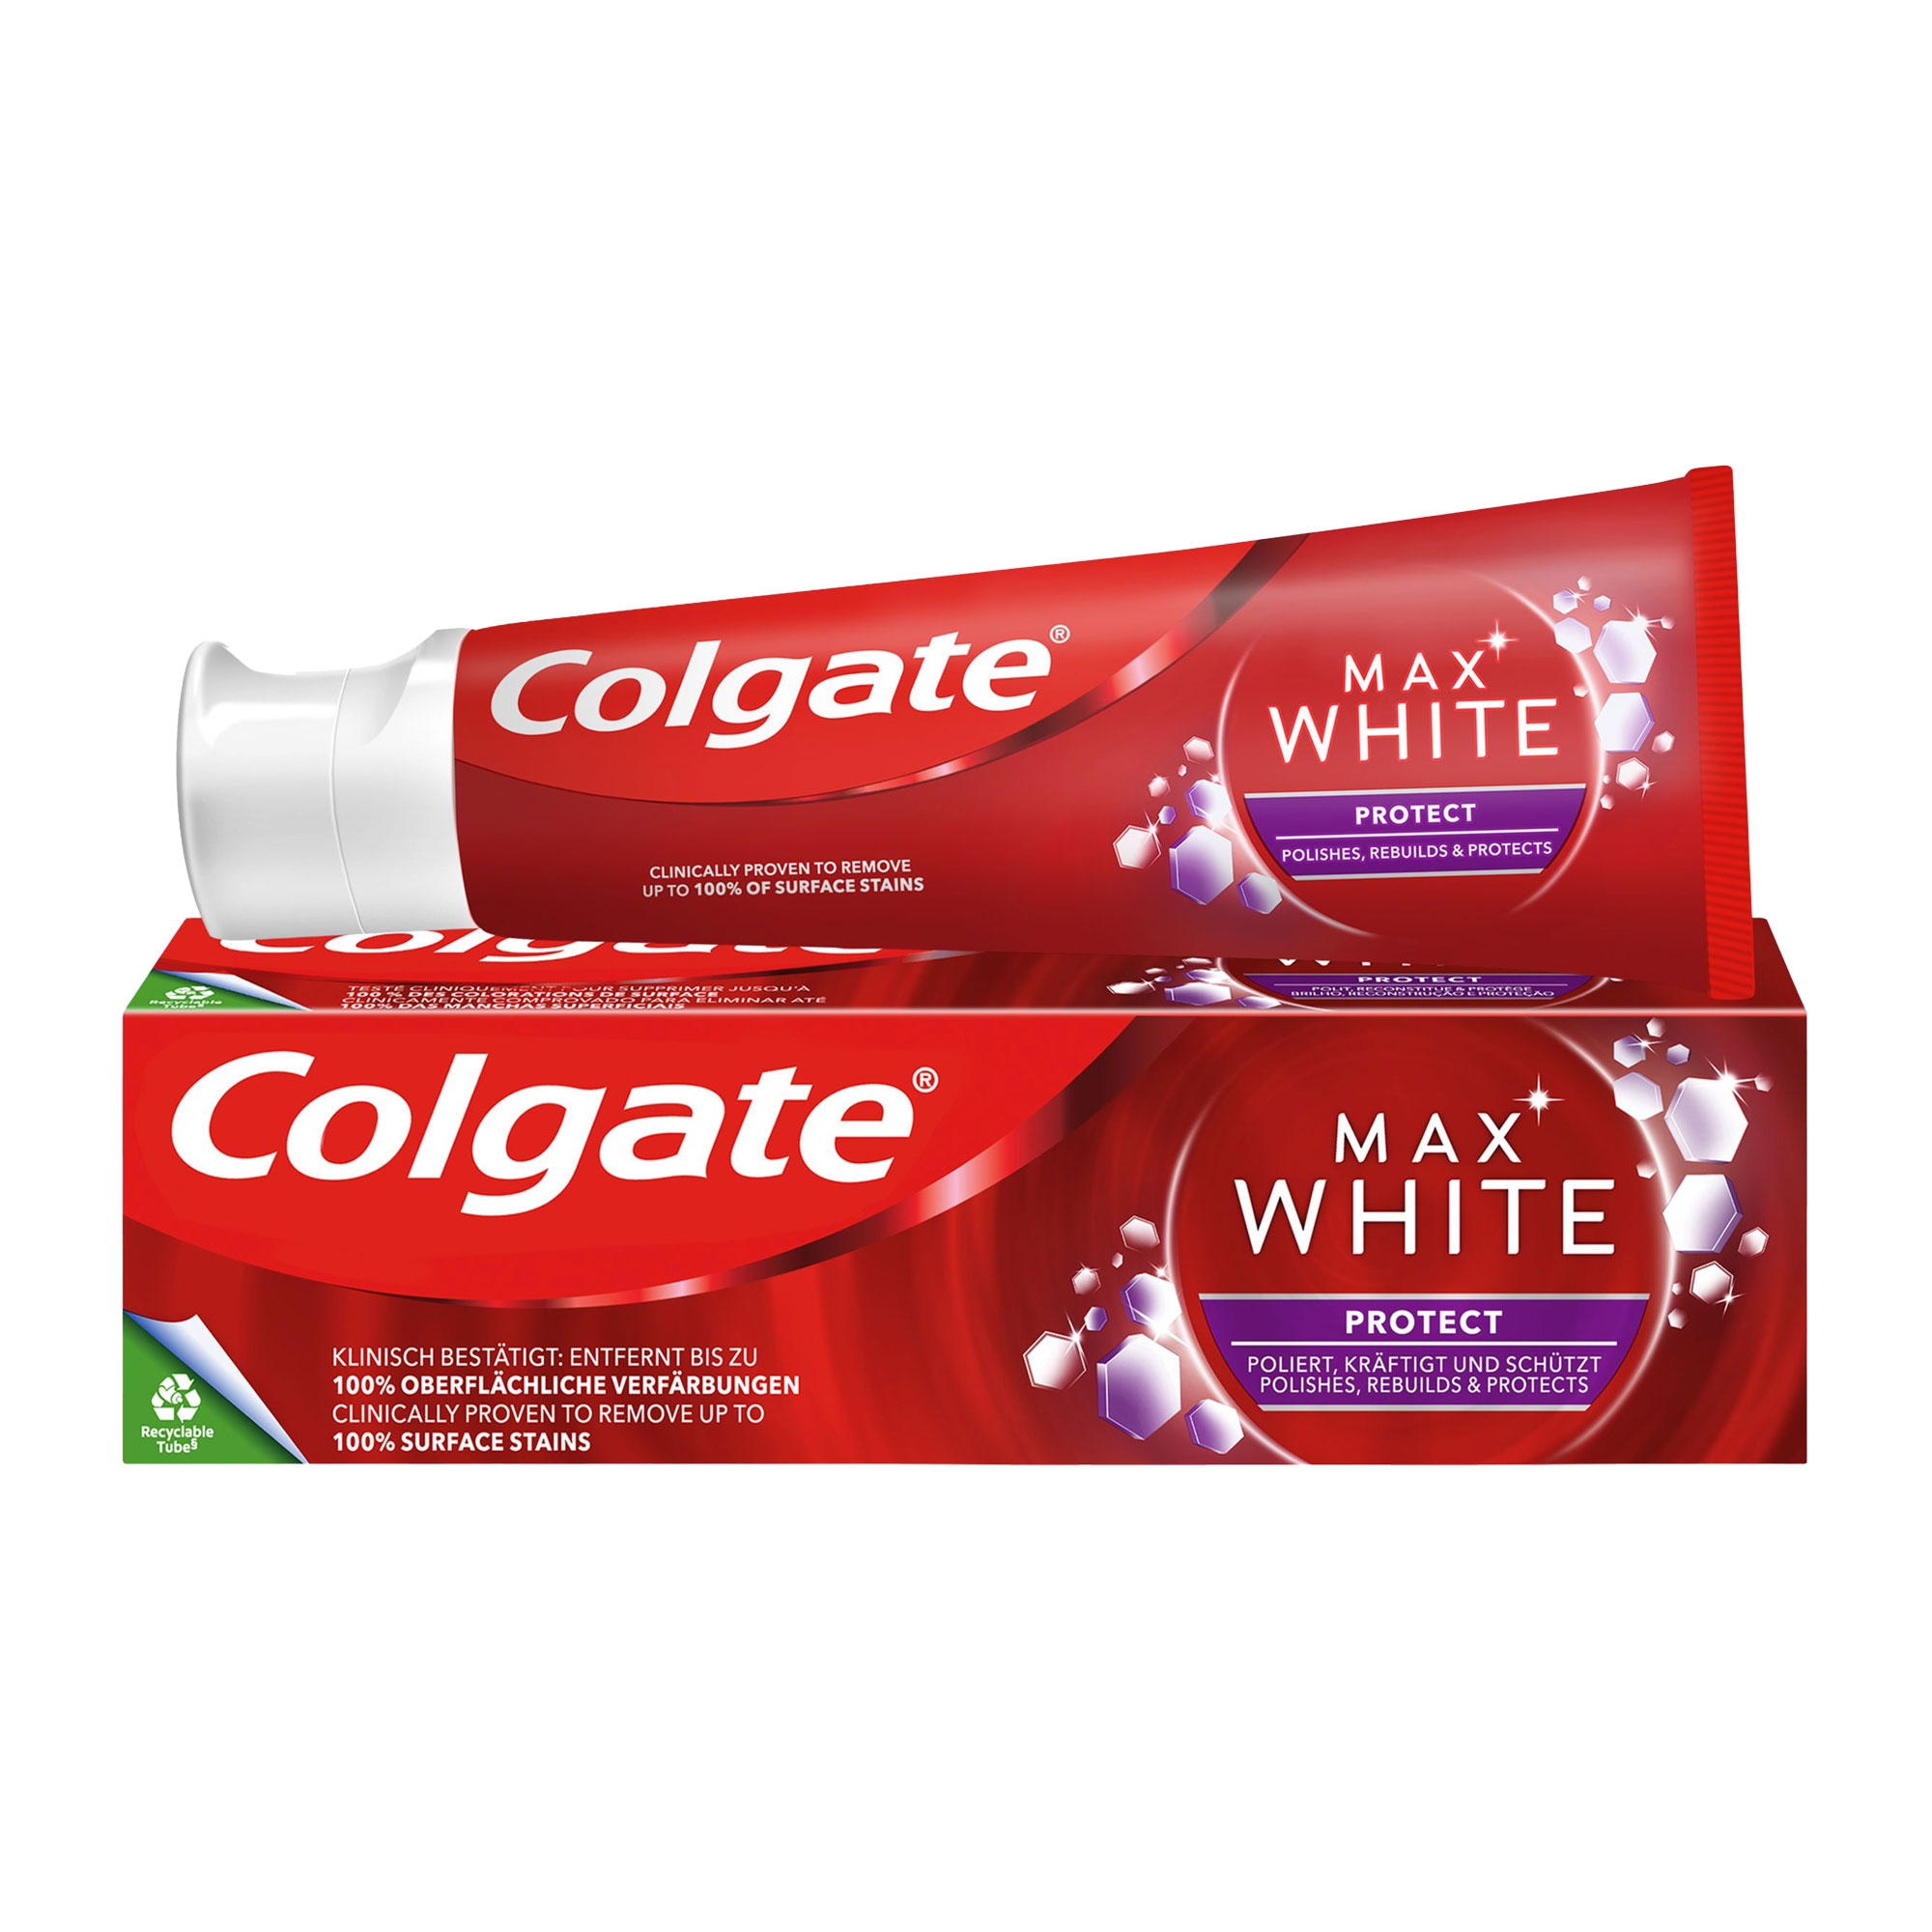 COLGATE Max white white & Protect Zahnpasta